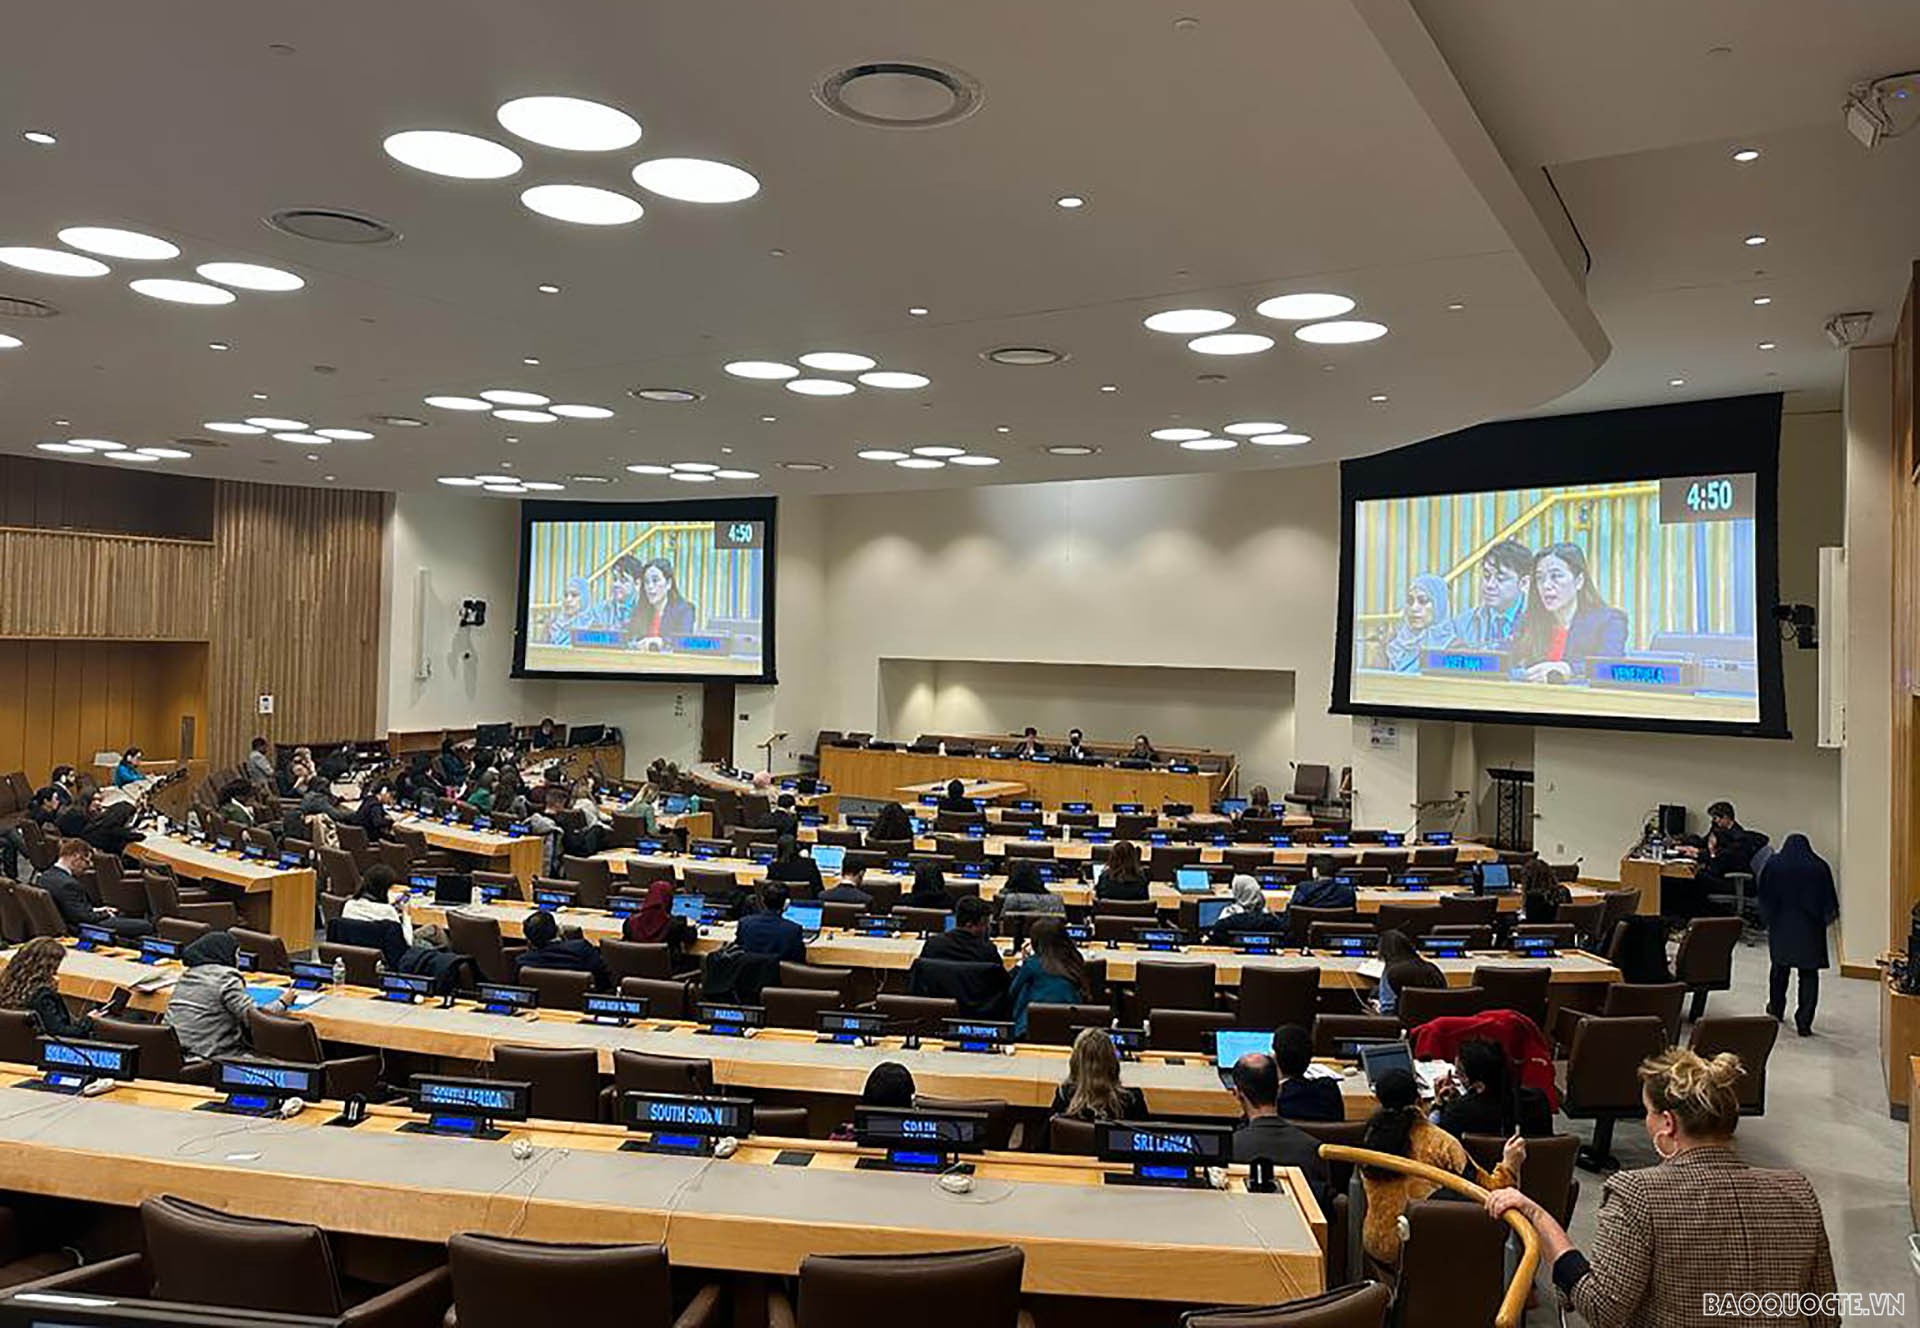 Ủy ban về các vấn đề xã hội, nhân đạo và văn hóa, Khóa 77 Đại hội đồng Liên hợp quốc đã thảo luận tại đề mục về thúc đẩy tiến bộ phụ nữ.